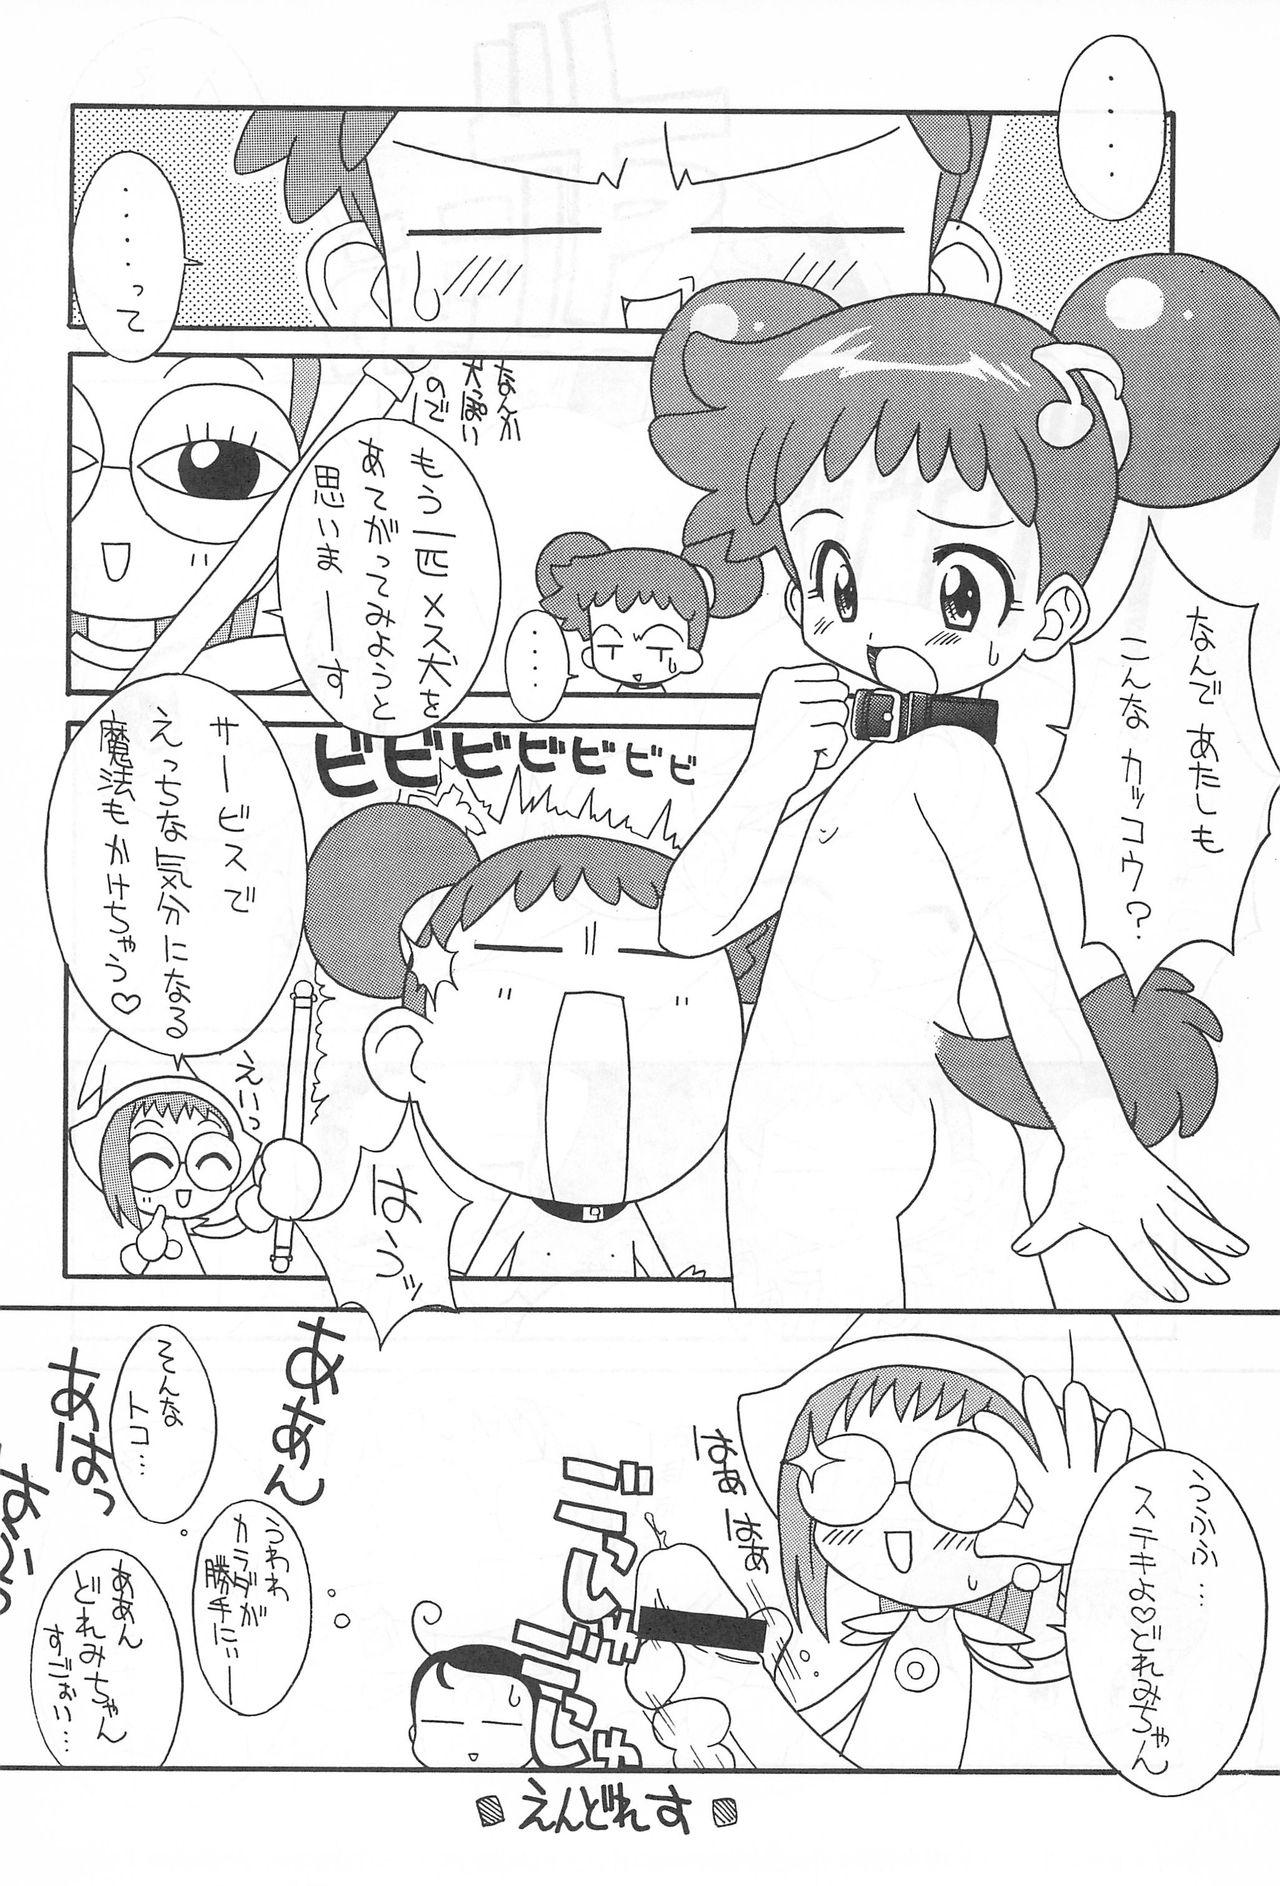 Sucking Cocks Pretty Ecchi - Ojamajo doremi Mum - Page 10